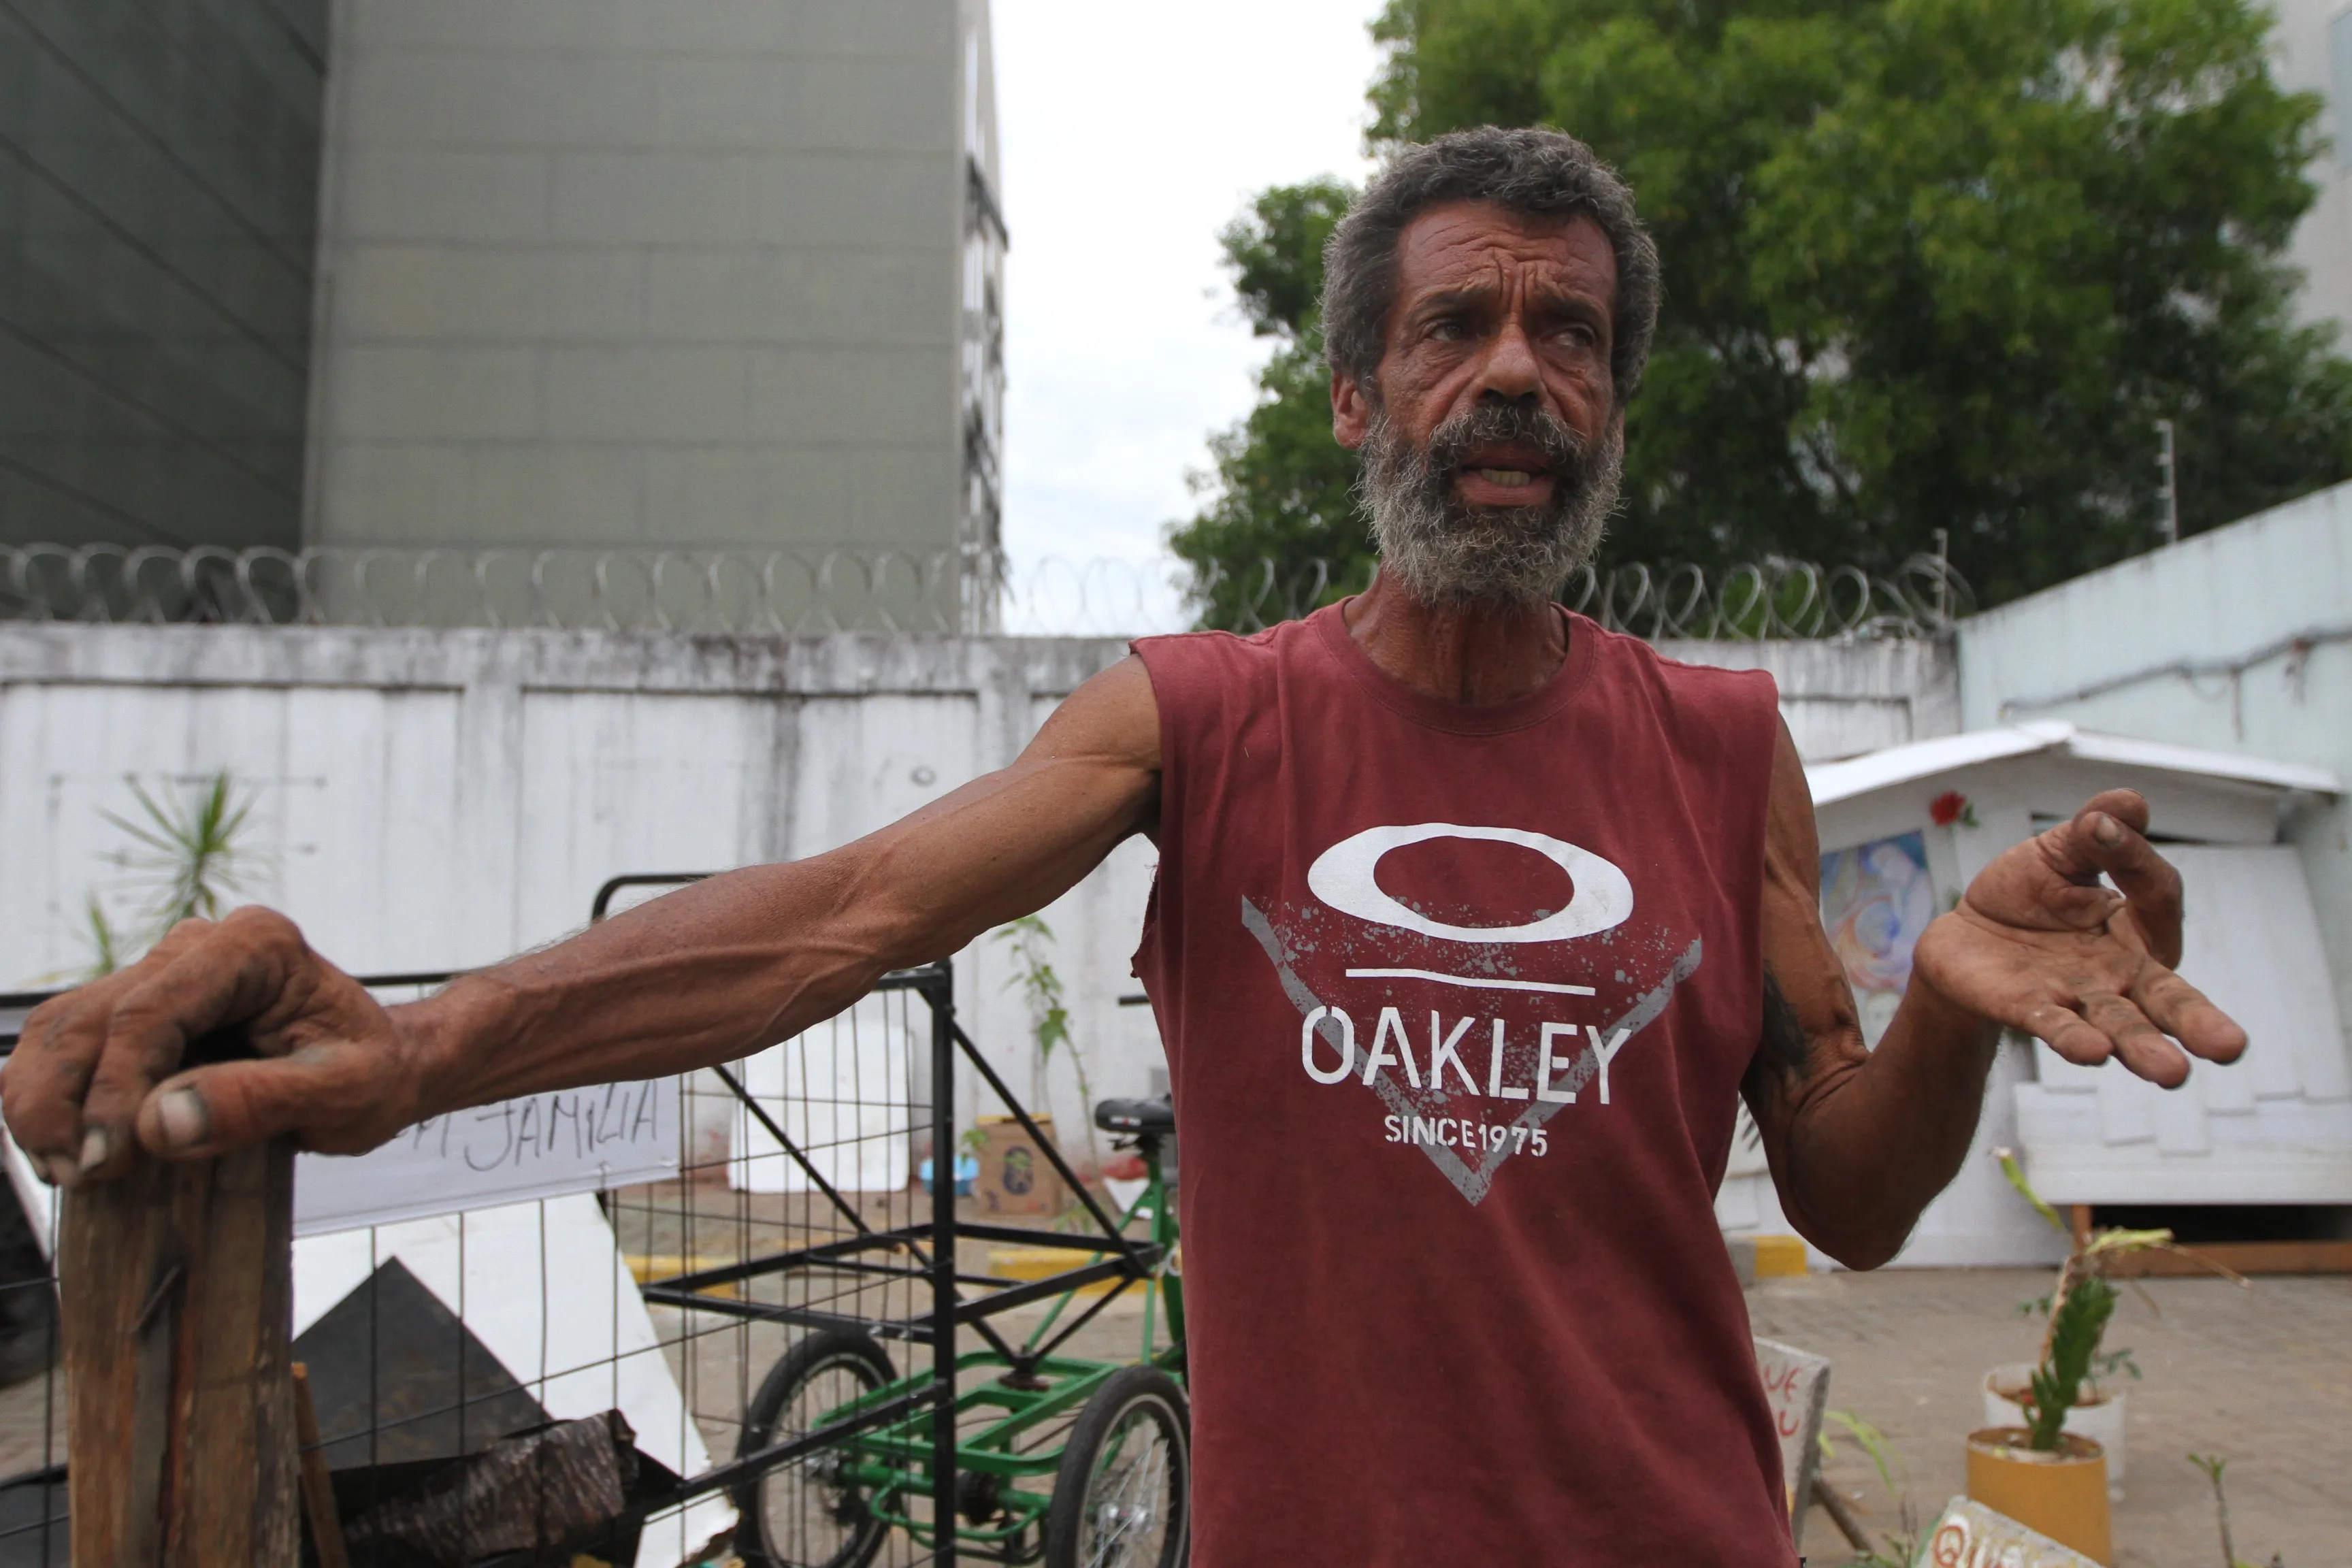 Marcos ganhou uma bicicleta, que usa para recolher material reciclável nas ruas e vender